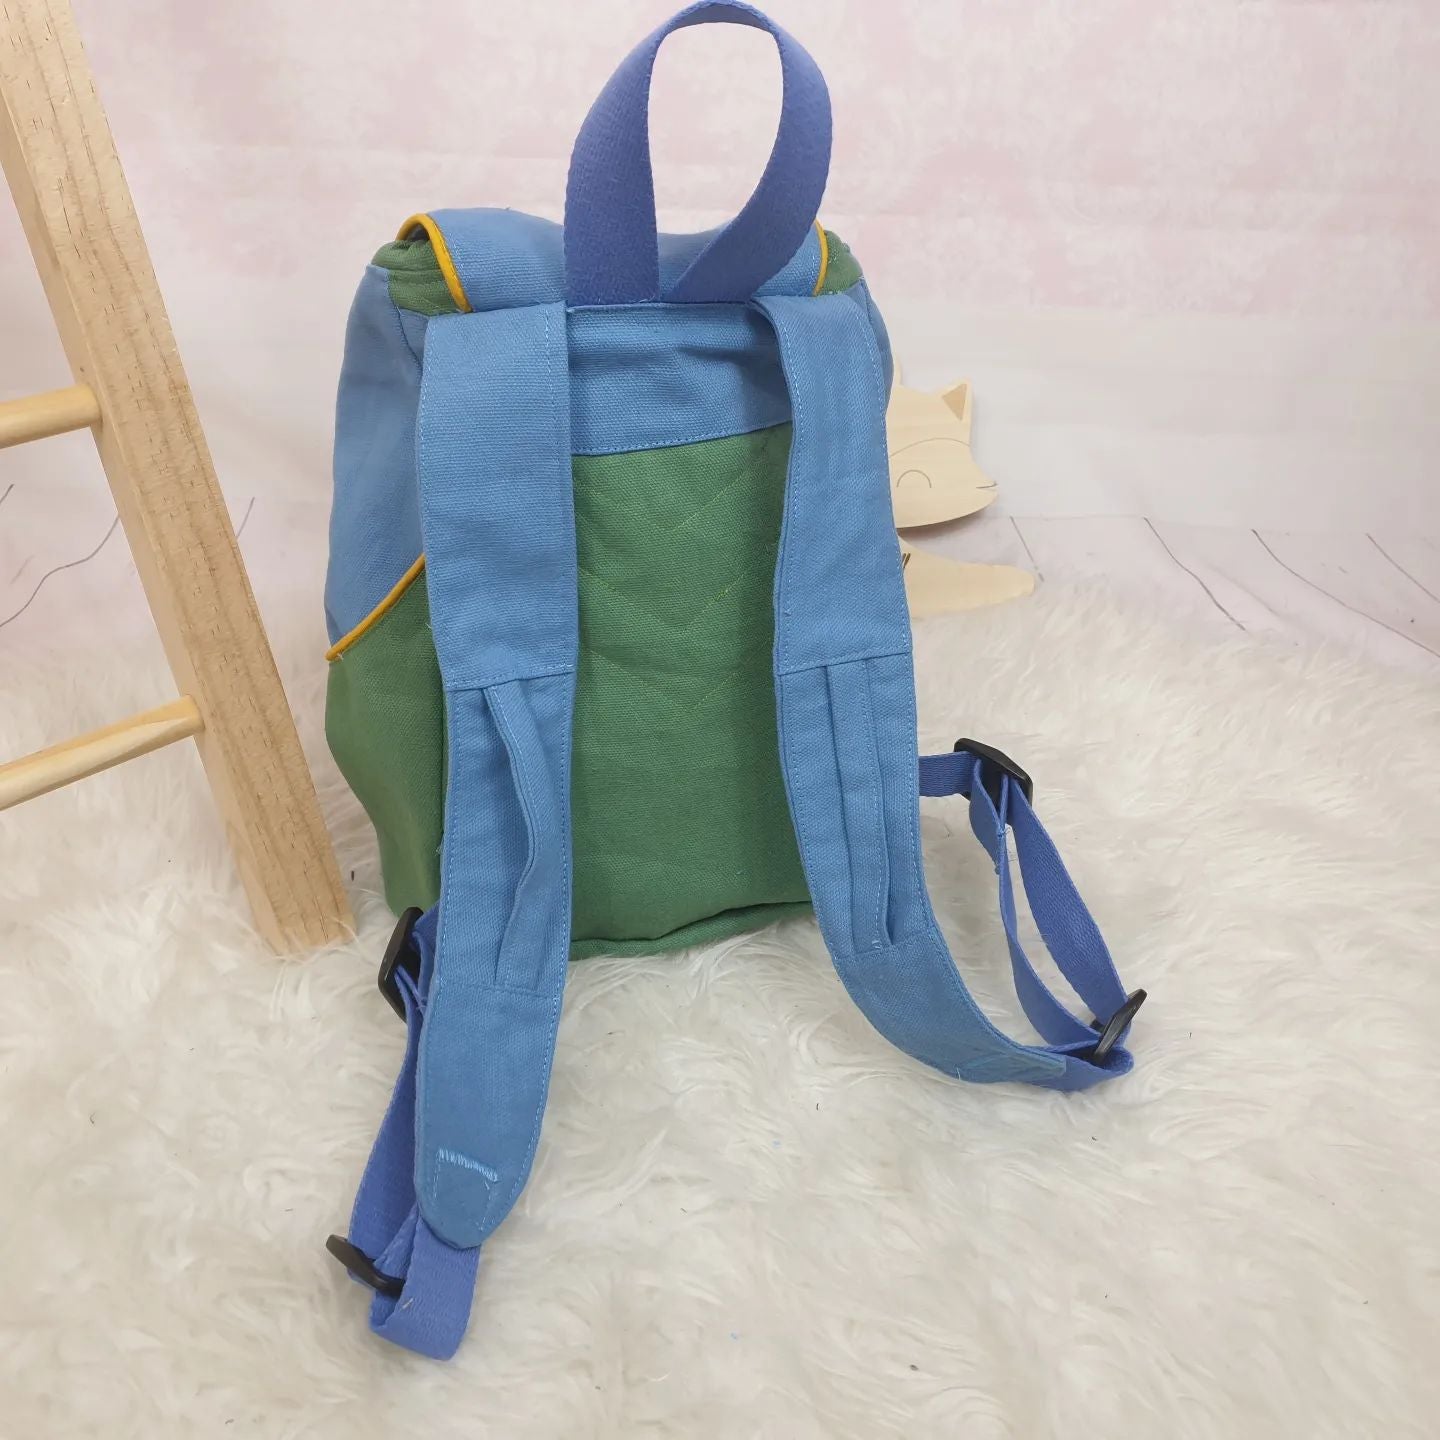 Rückansicht Kindergartenrucksack zweifarbig grün blau optionaler Brustgurt